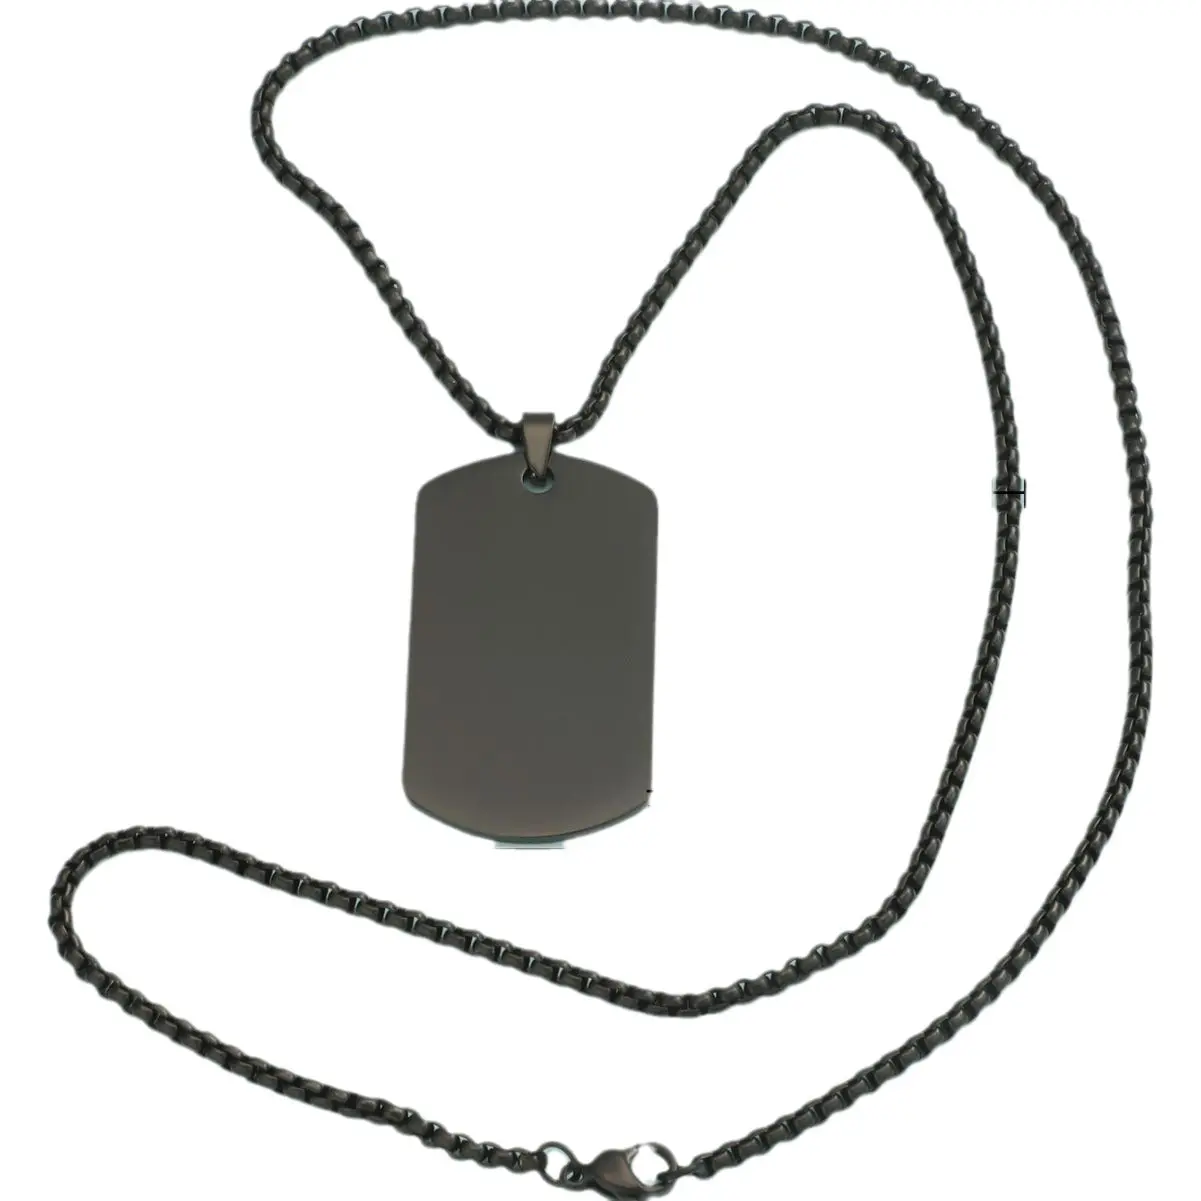 Collana con medaglietta militare a catena con ciondolo a forma di medaglietta per cani in acciaio inossidabile a specchio all'ingrosso